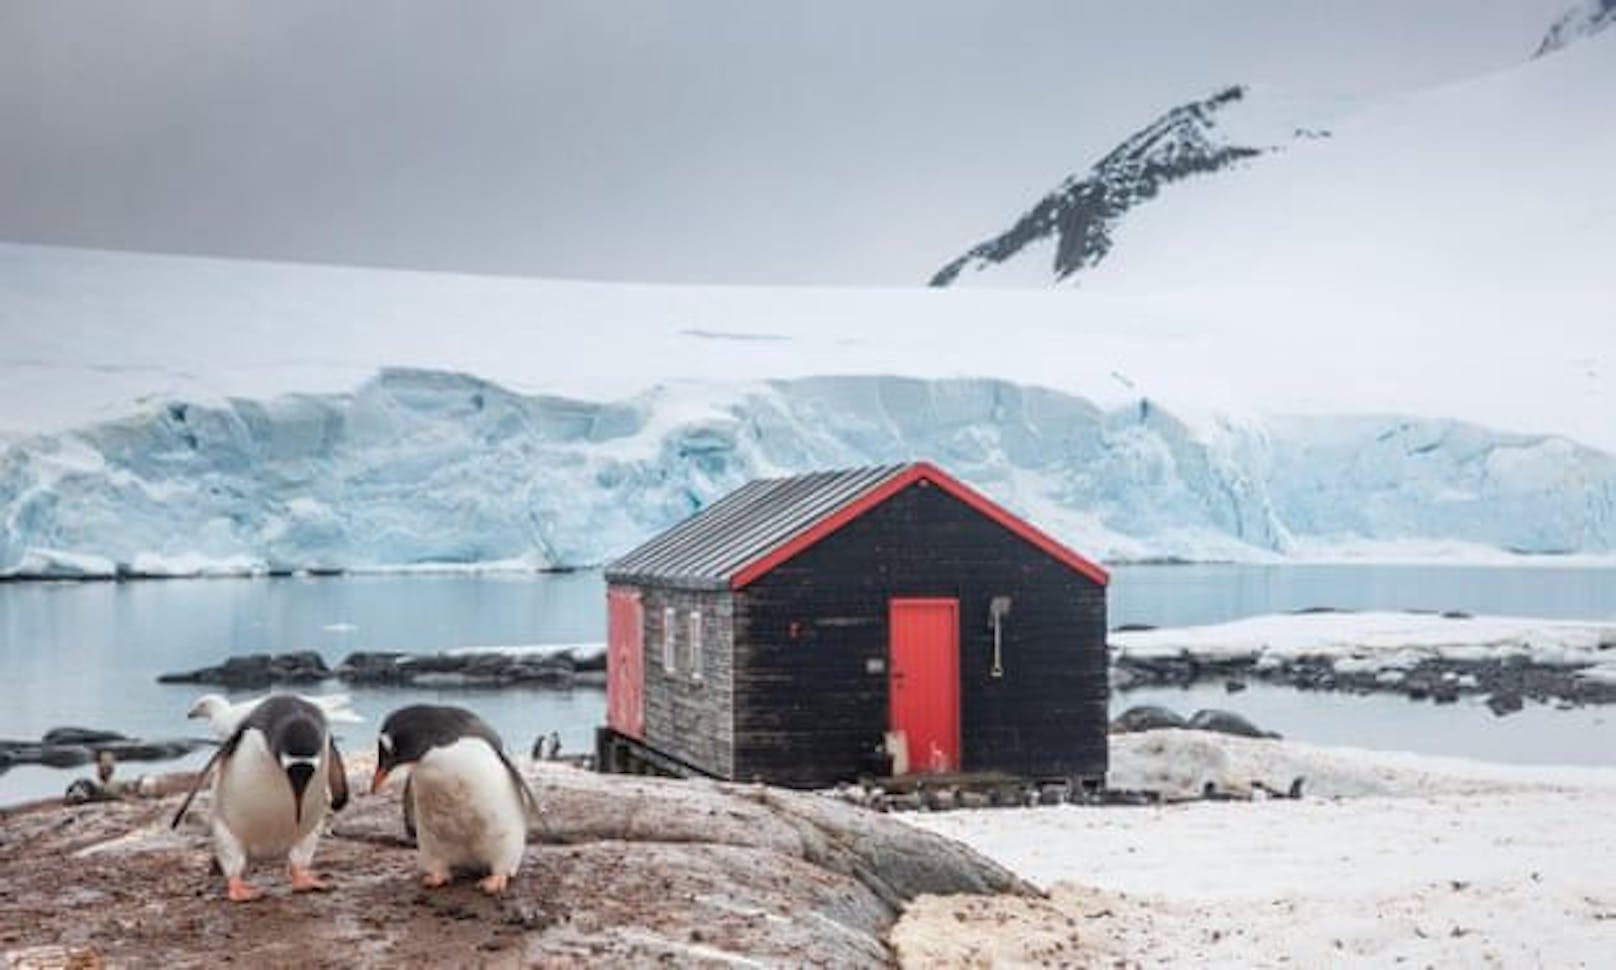 Wer die Einsamkeit nicht scheut und Kälte verträgt, könnte mit dieser Stelle glücklich werden: Eine britische Stiftung sucht Personen, die in der Station Port Lockroy in der Antarktis ein Postbüro führen und Pinguine zählen.